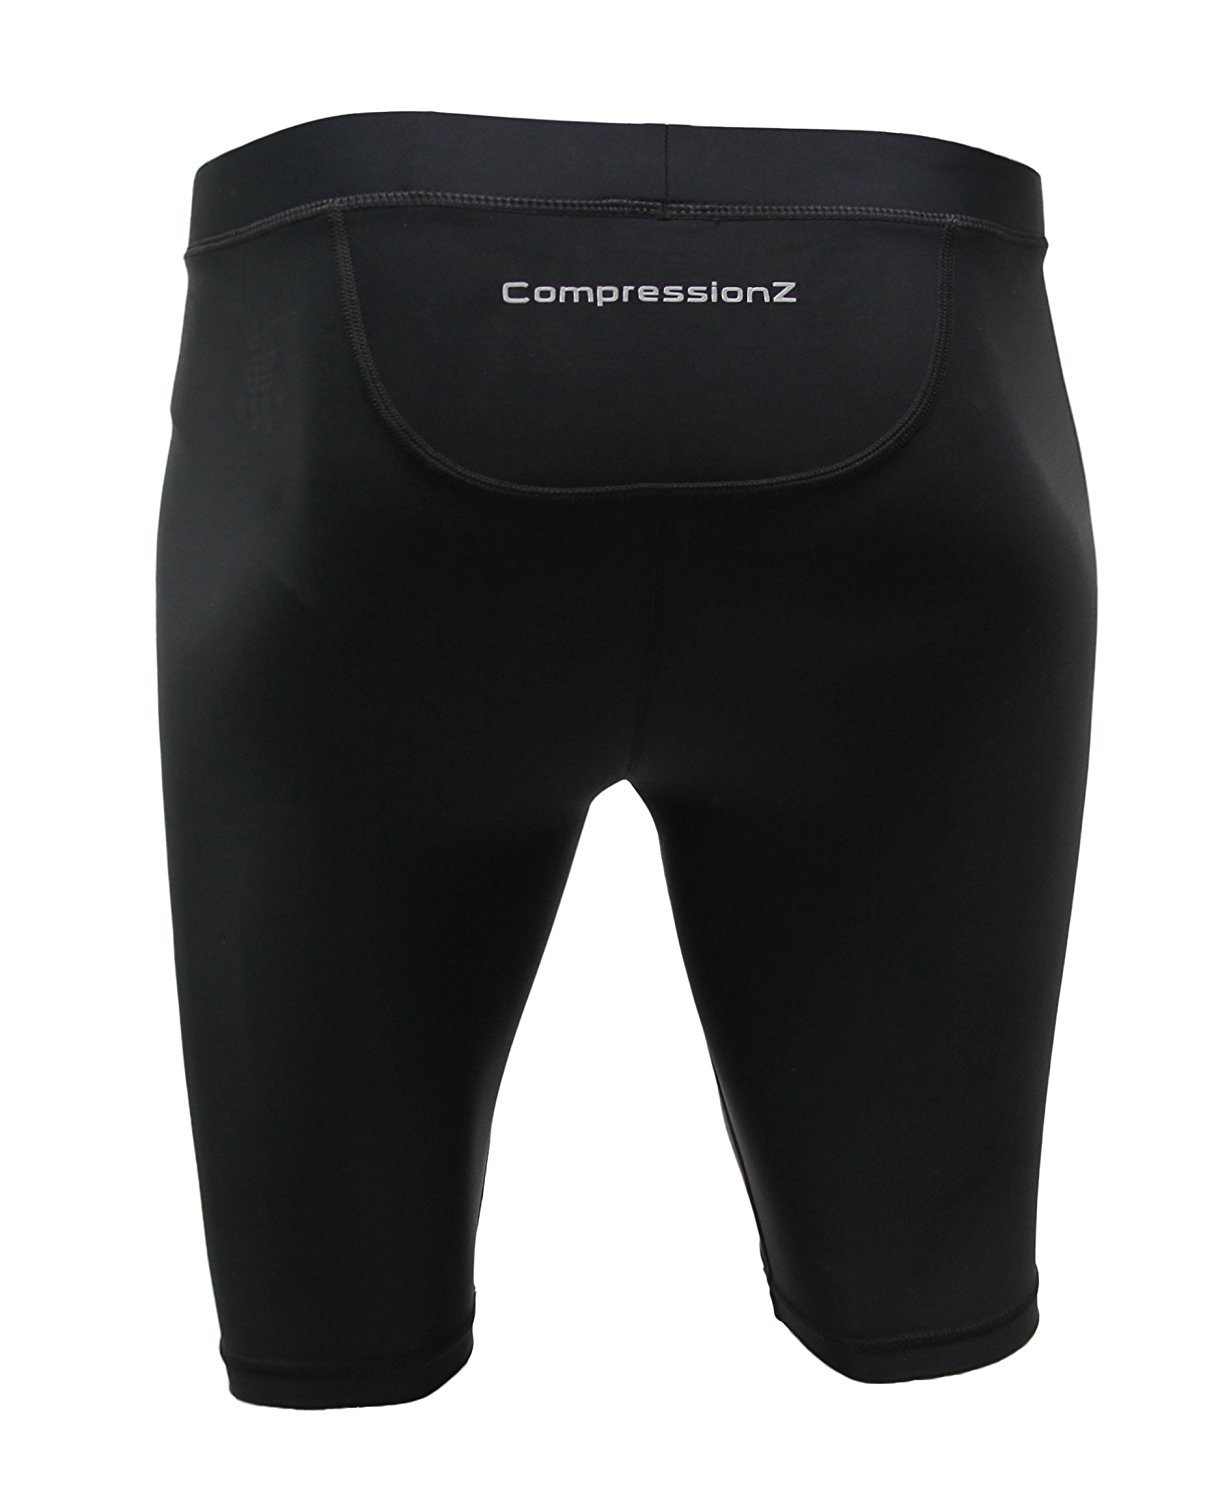 compression shorts underwear